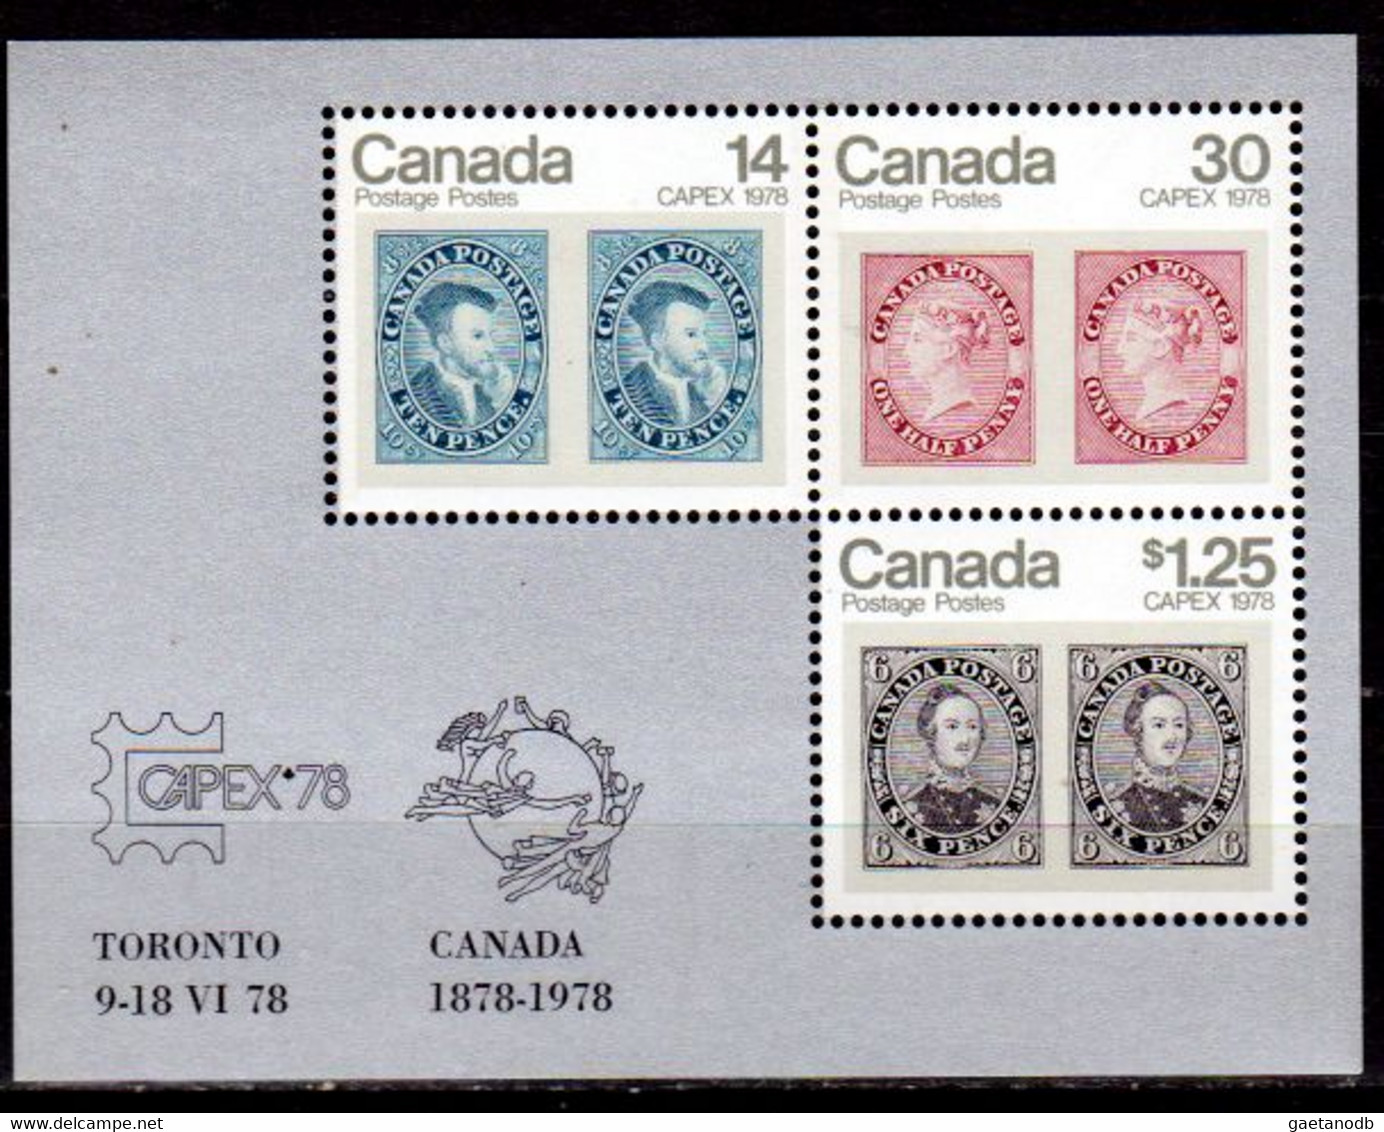 Canada-0065: Emissione 1978 (++) MNH - Qualità A Vostro Giudizio. - Booklets Pages